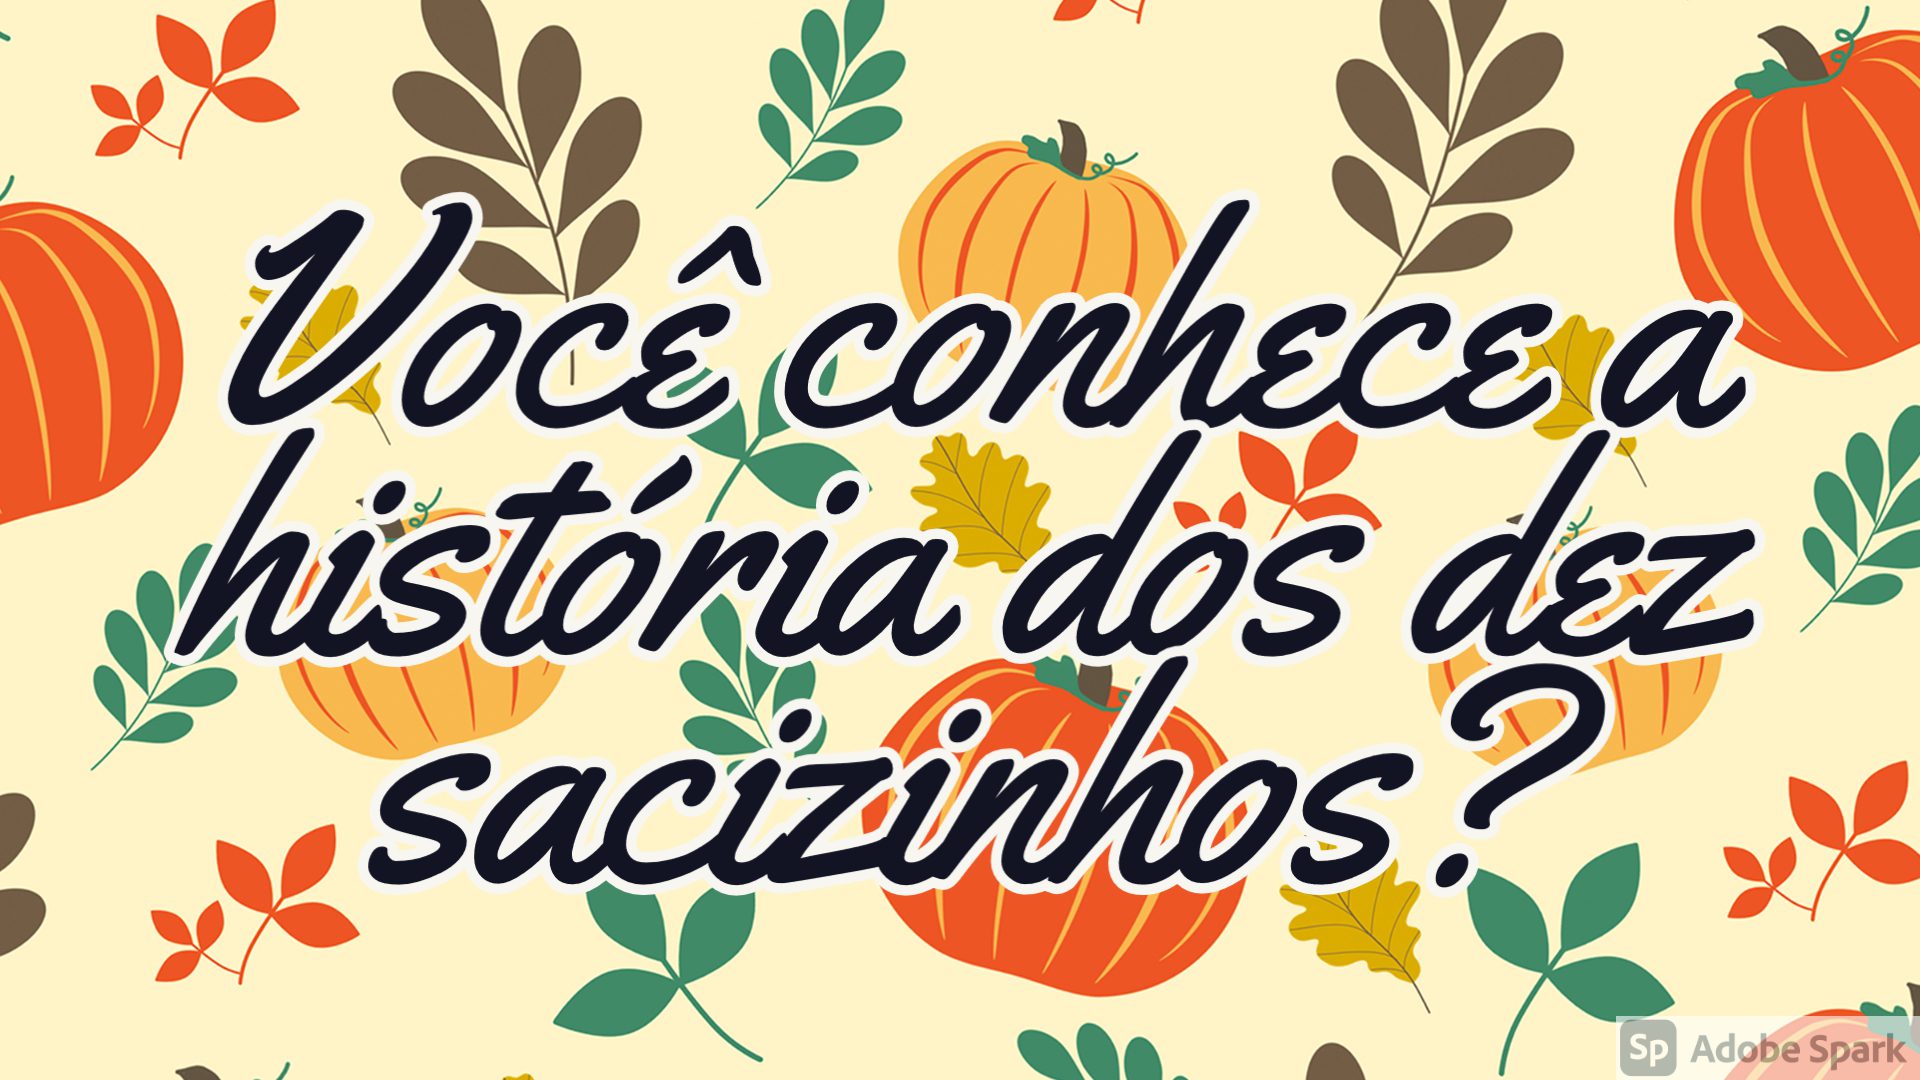 You are currently viewing Língua Portuguesa – Você conhece a história dos dez sacizinhos?